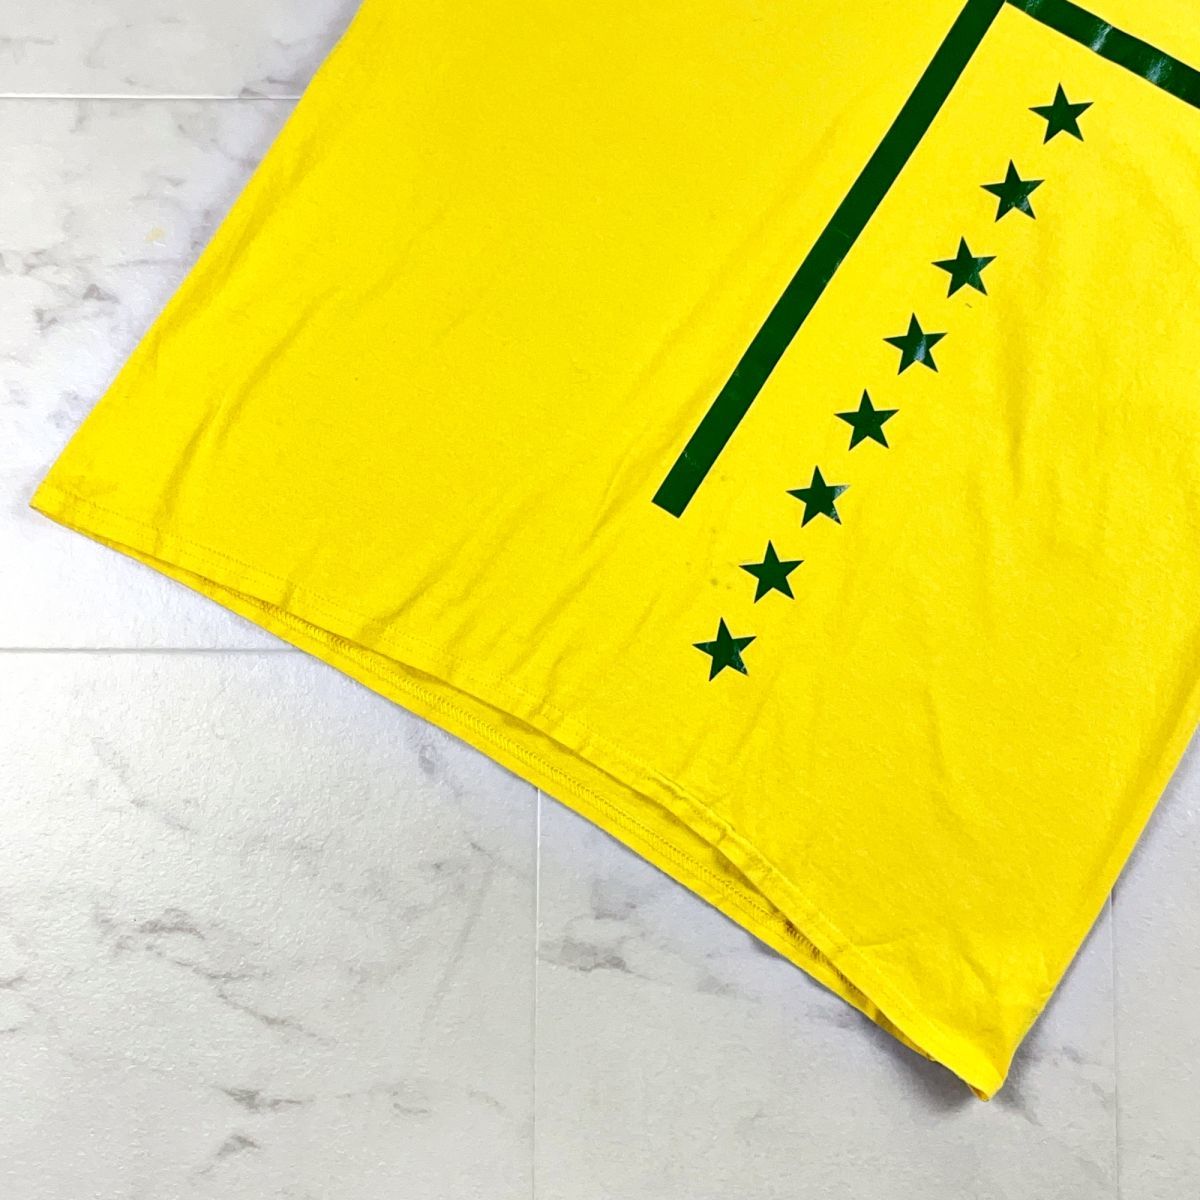 NO ID. No ID передний черный Sprint футболка tops мужской желтый цвет желтый зеленый зеленый размер 3*HC819